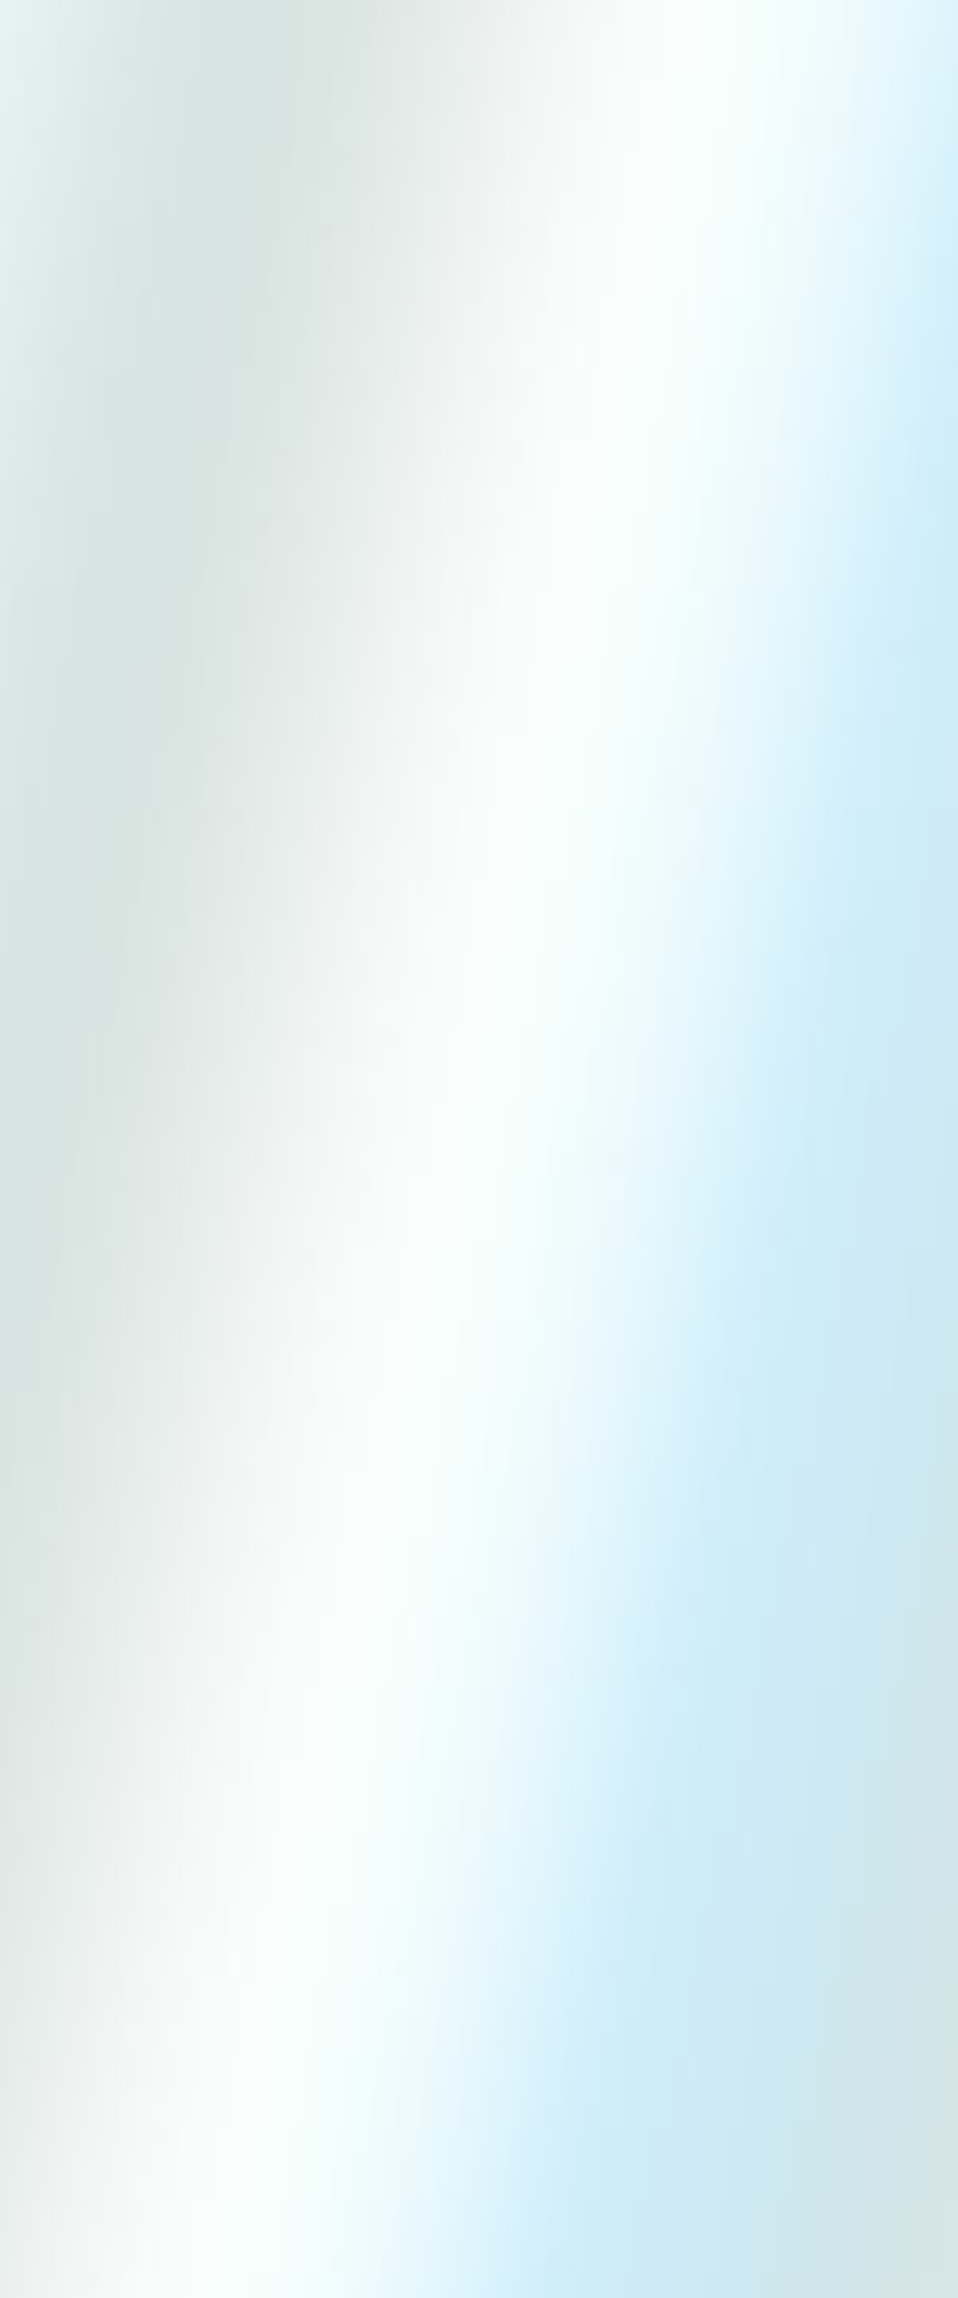 Le site officiel francophone de Leeuw Saint Pierre - Leeuw-Saint-Pierre est une commune de la périphérie bruxelloise et constitue une entite administrative qui porte le nom officiel de Sint Pieters Leeuw. - Sint-Pieters-Leeuw is een randgemeente van Brussel en bestaat uit een administratieve eenheid die de officiële naam van Sint-Pieters-Leeuw draagt.